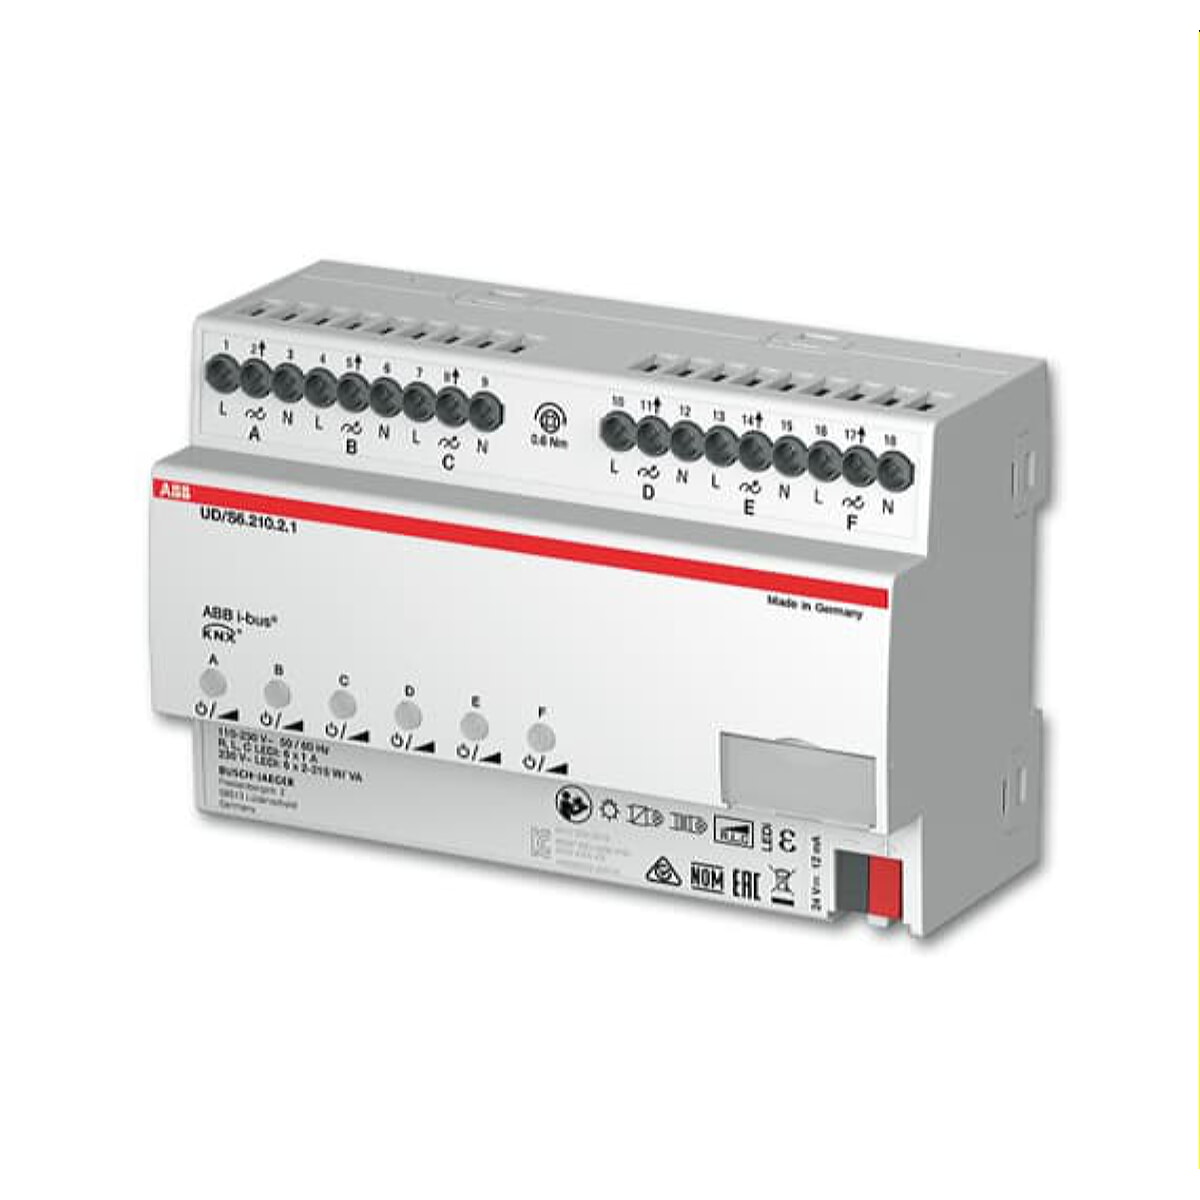 ABB Stotz-Kontakt LED-Dimmer UD/S6.210.2.1 6fach 210 W/VA REG